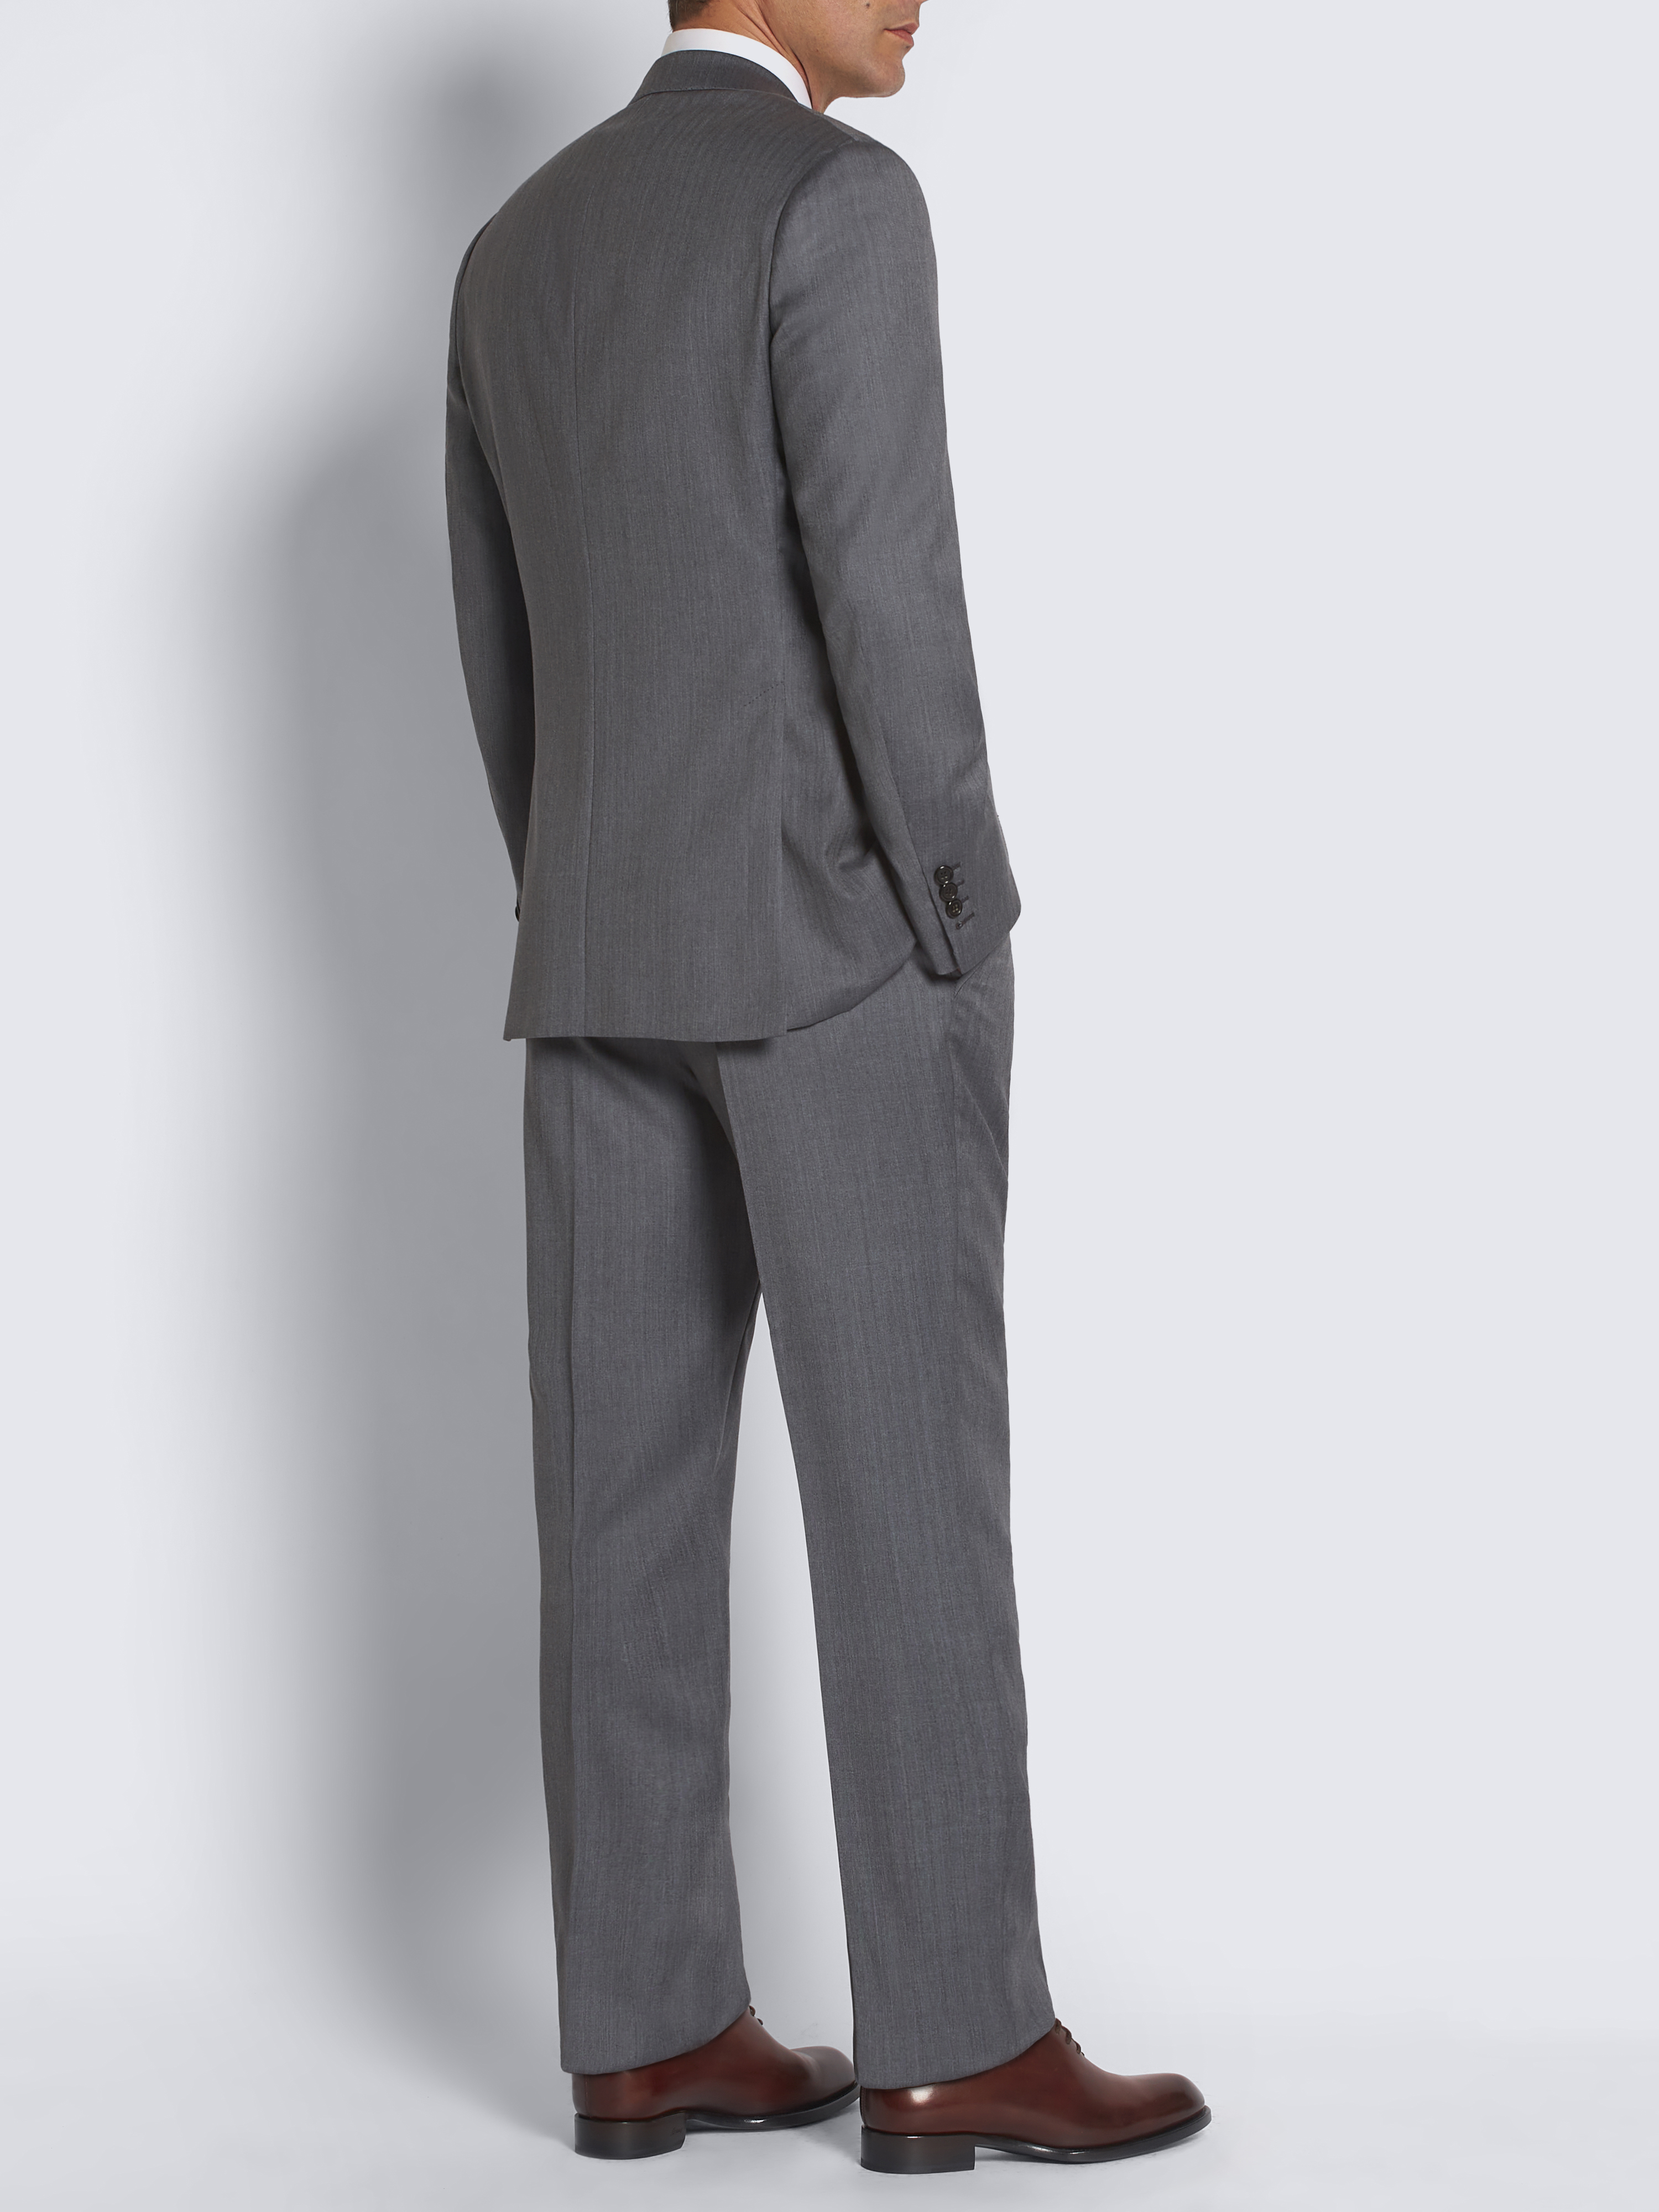 Buy Men Grey Slim Fit Check Formal Three Piece Suit Online  786658  Allen  Solly